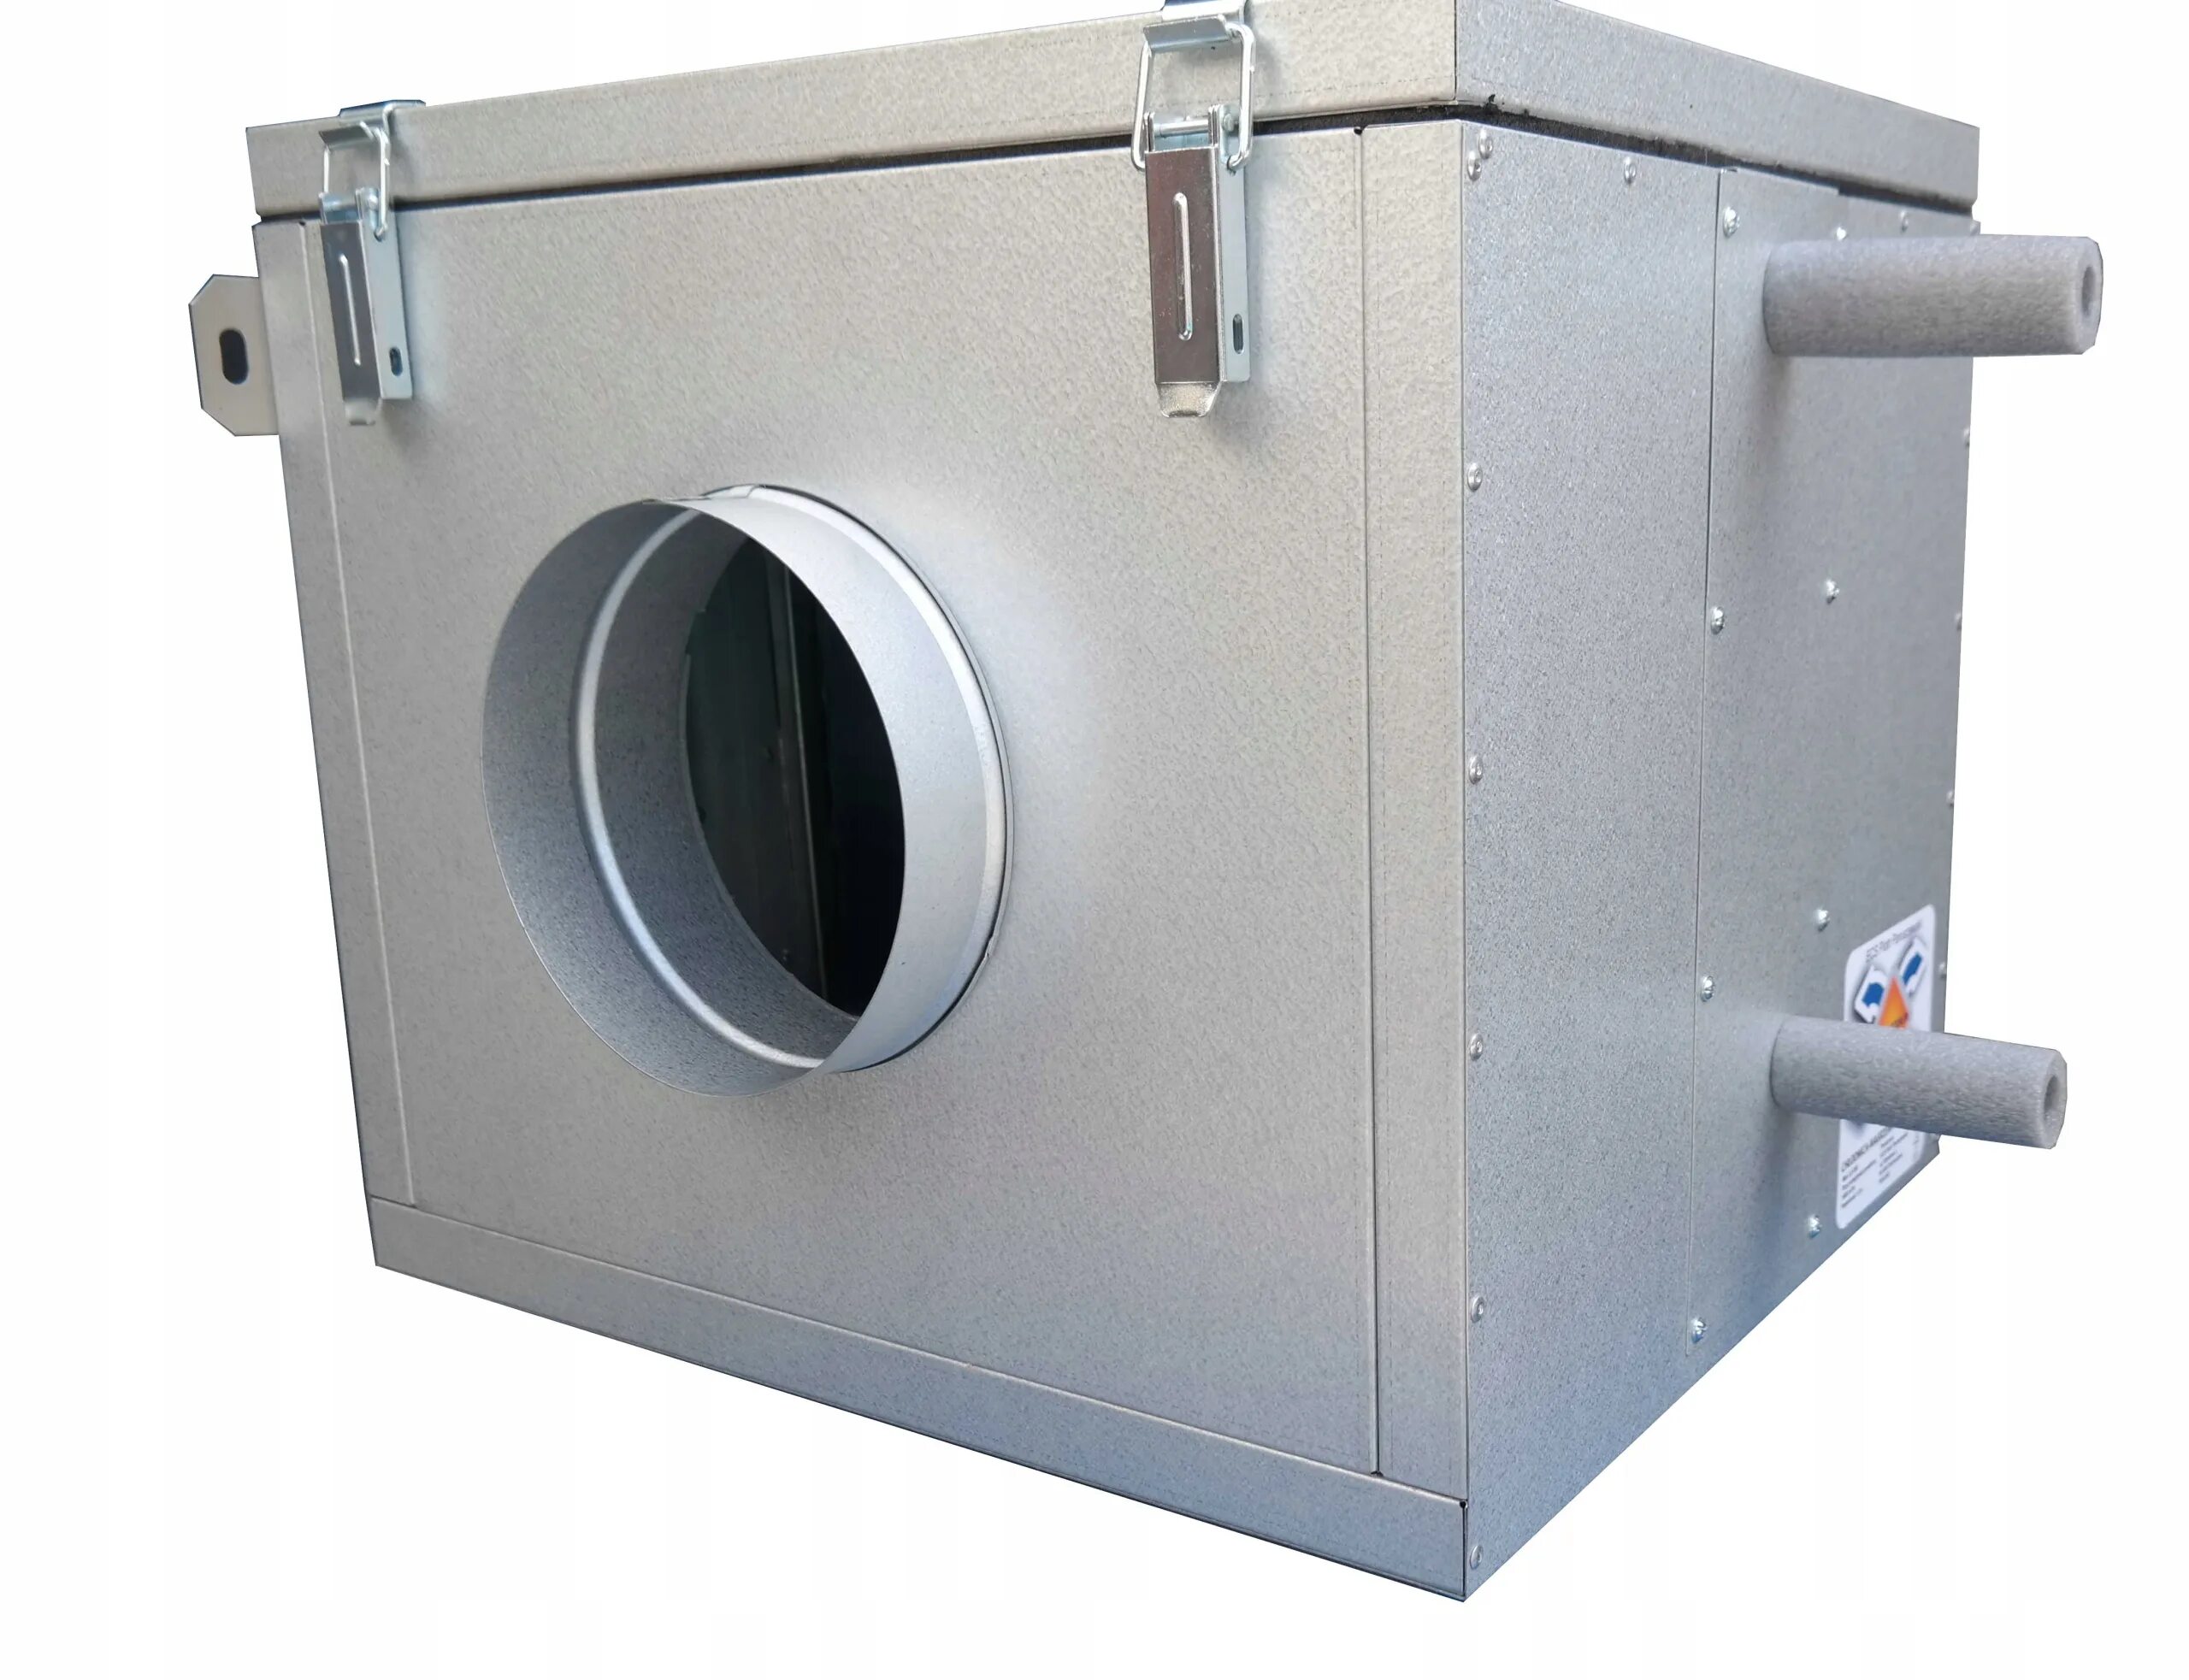 Канальный охладитель (испаритель) New cool-Box i 250-1000 5,0 КВТ. Фреоновый охладитель для круглых каналов 100мм. Канальный воздухоохладитель. Канальный охладитель для круглых воздуховодов. Канальный охладитель